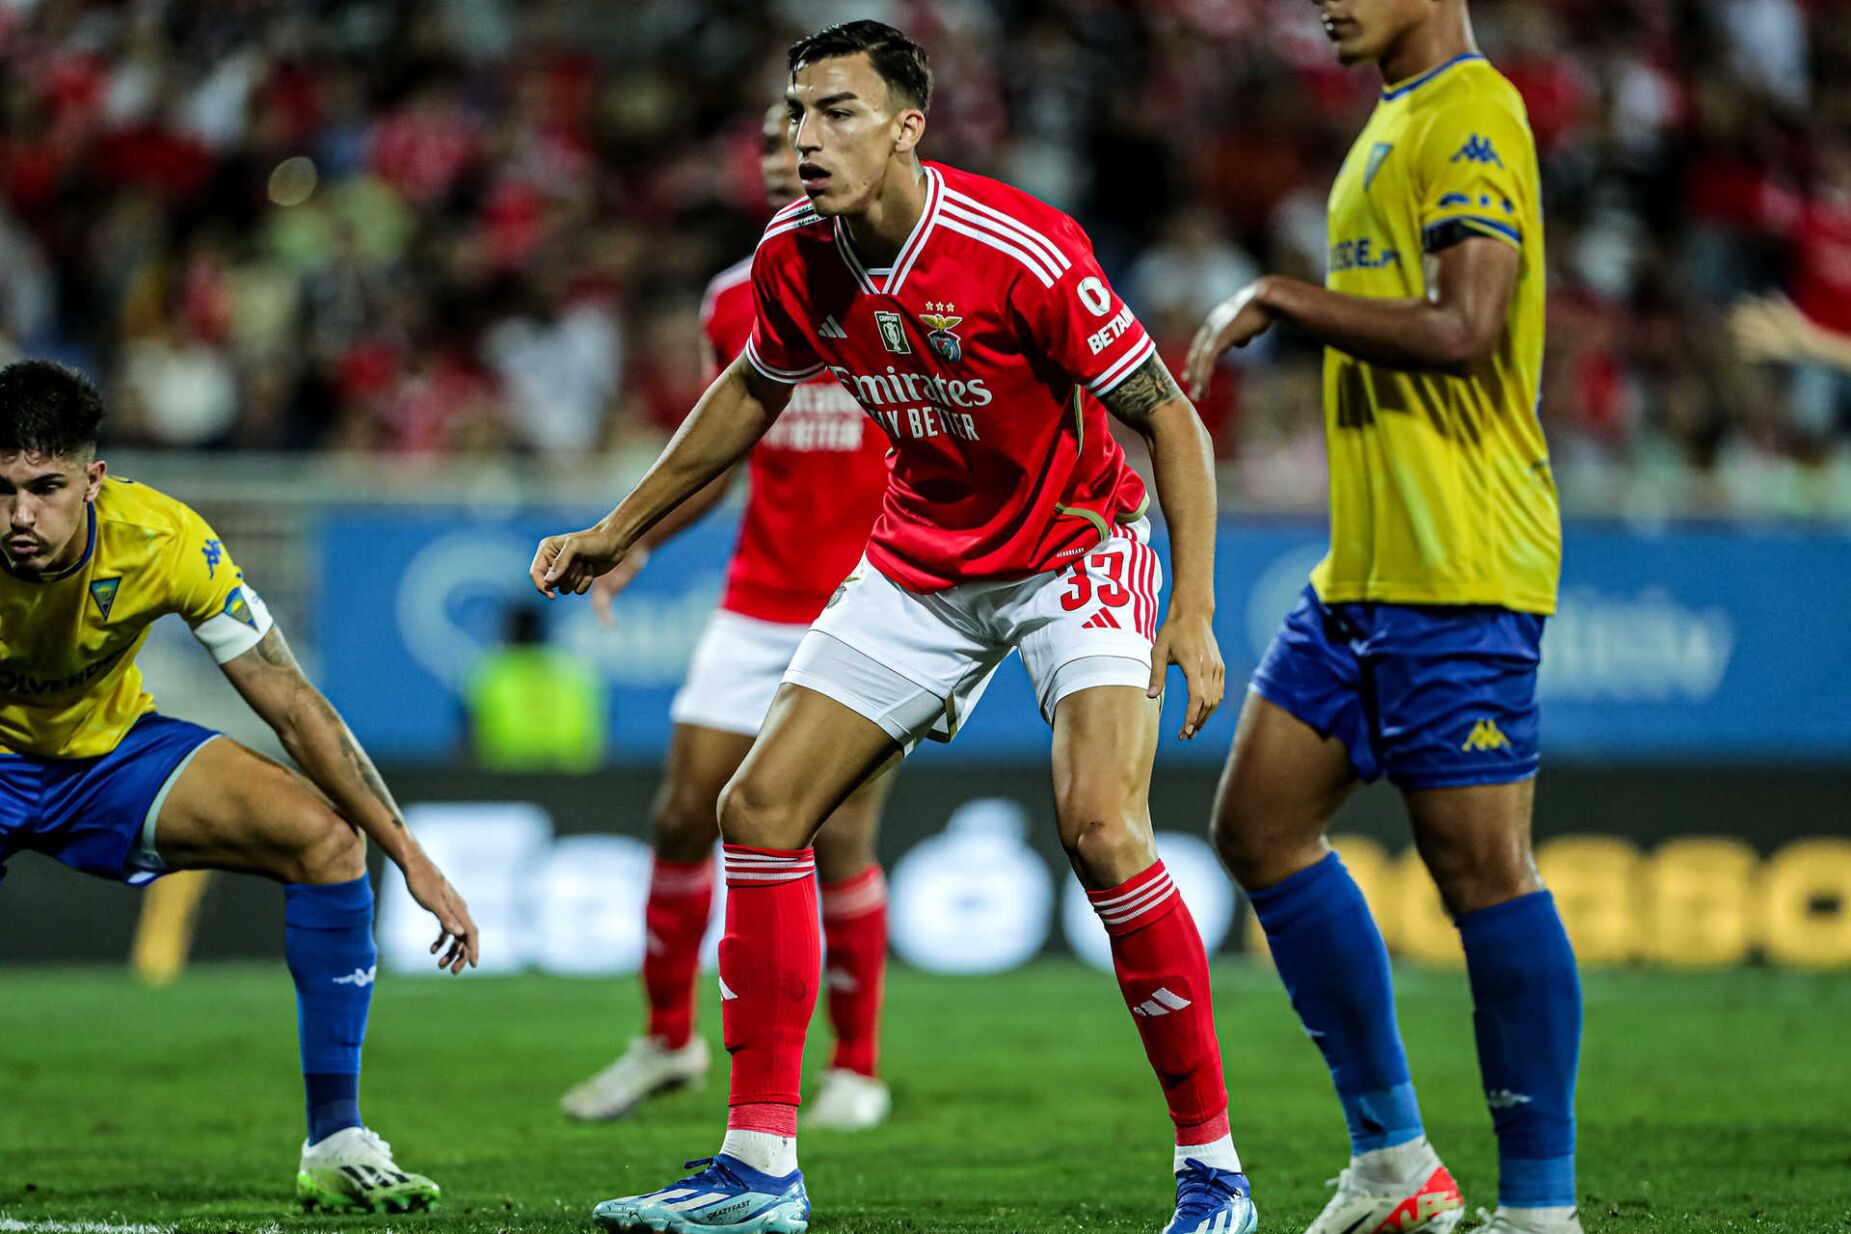 António Silva: É frustrante, o Benfica não pode empatar ou perder jogos